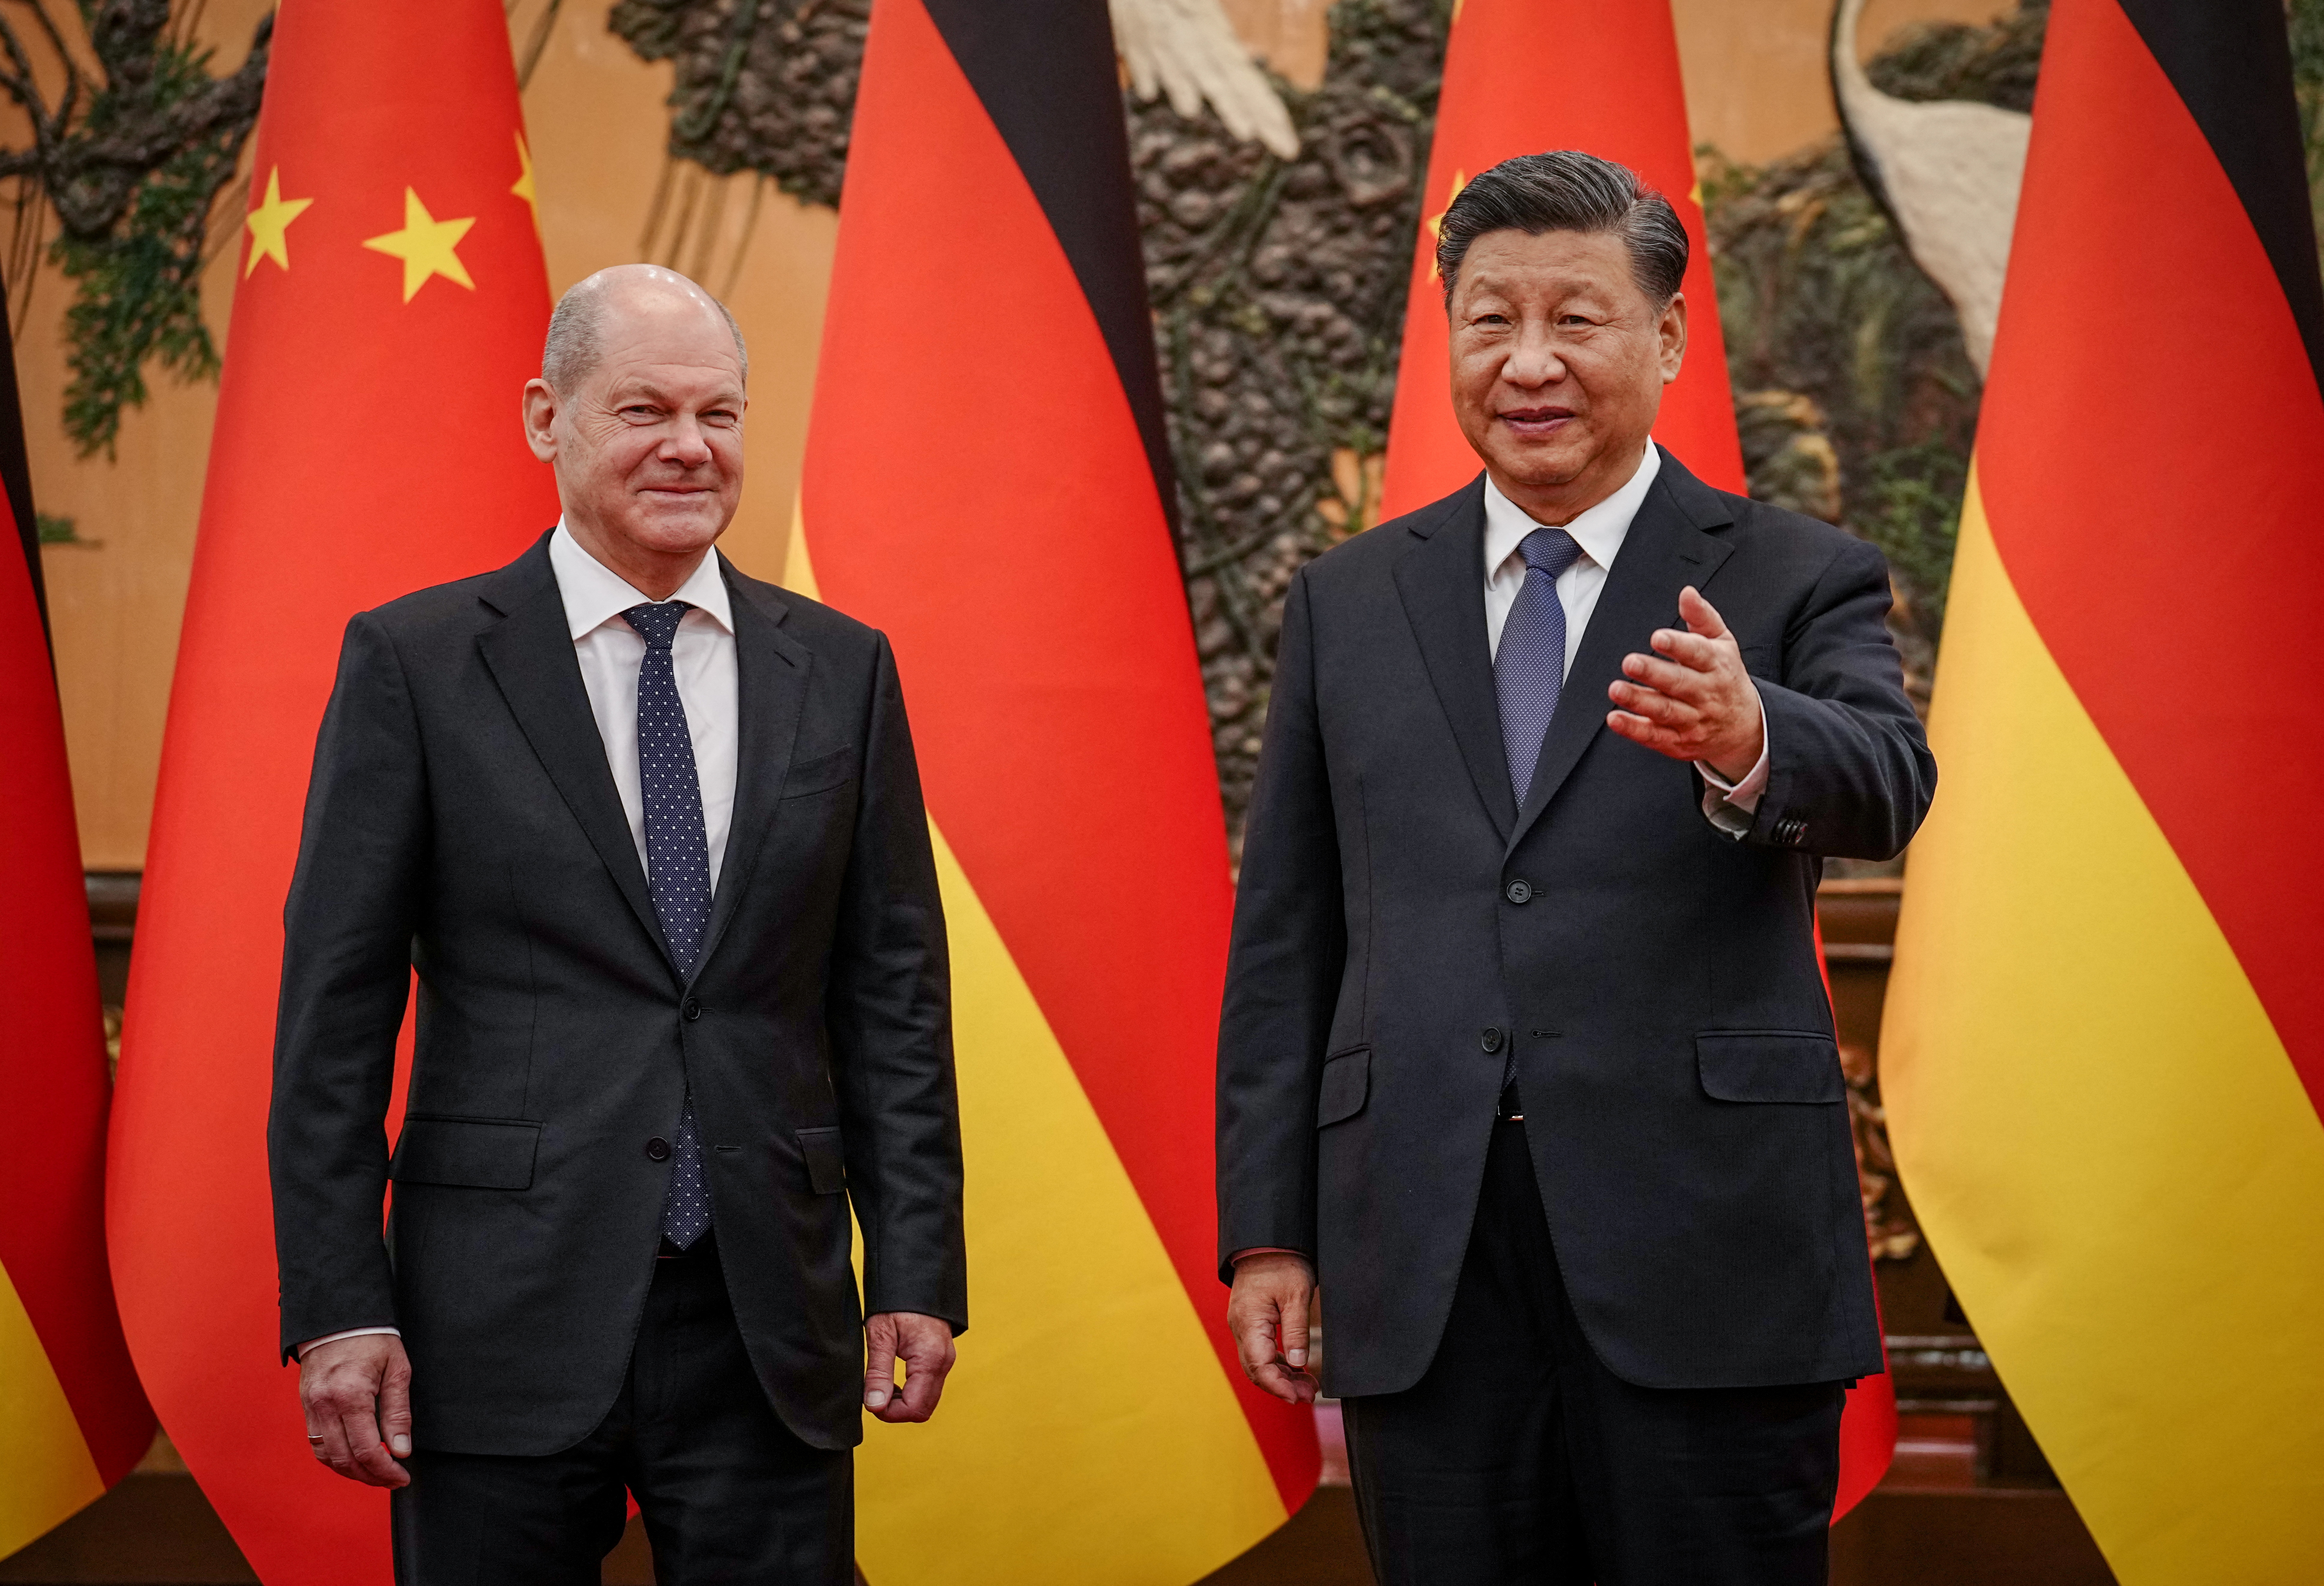 Durante su visita a China, el jefe del gobierno alemán, Olaf Scholz, urgió a Putin a extender el pacto firmado en julio, que permitió aliviar la crisis alimentaria global desatada tras la guerra. (REUTERS)